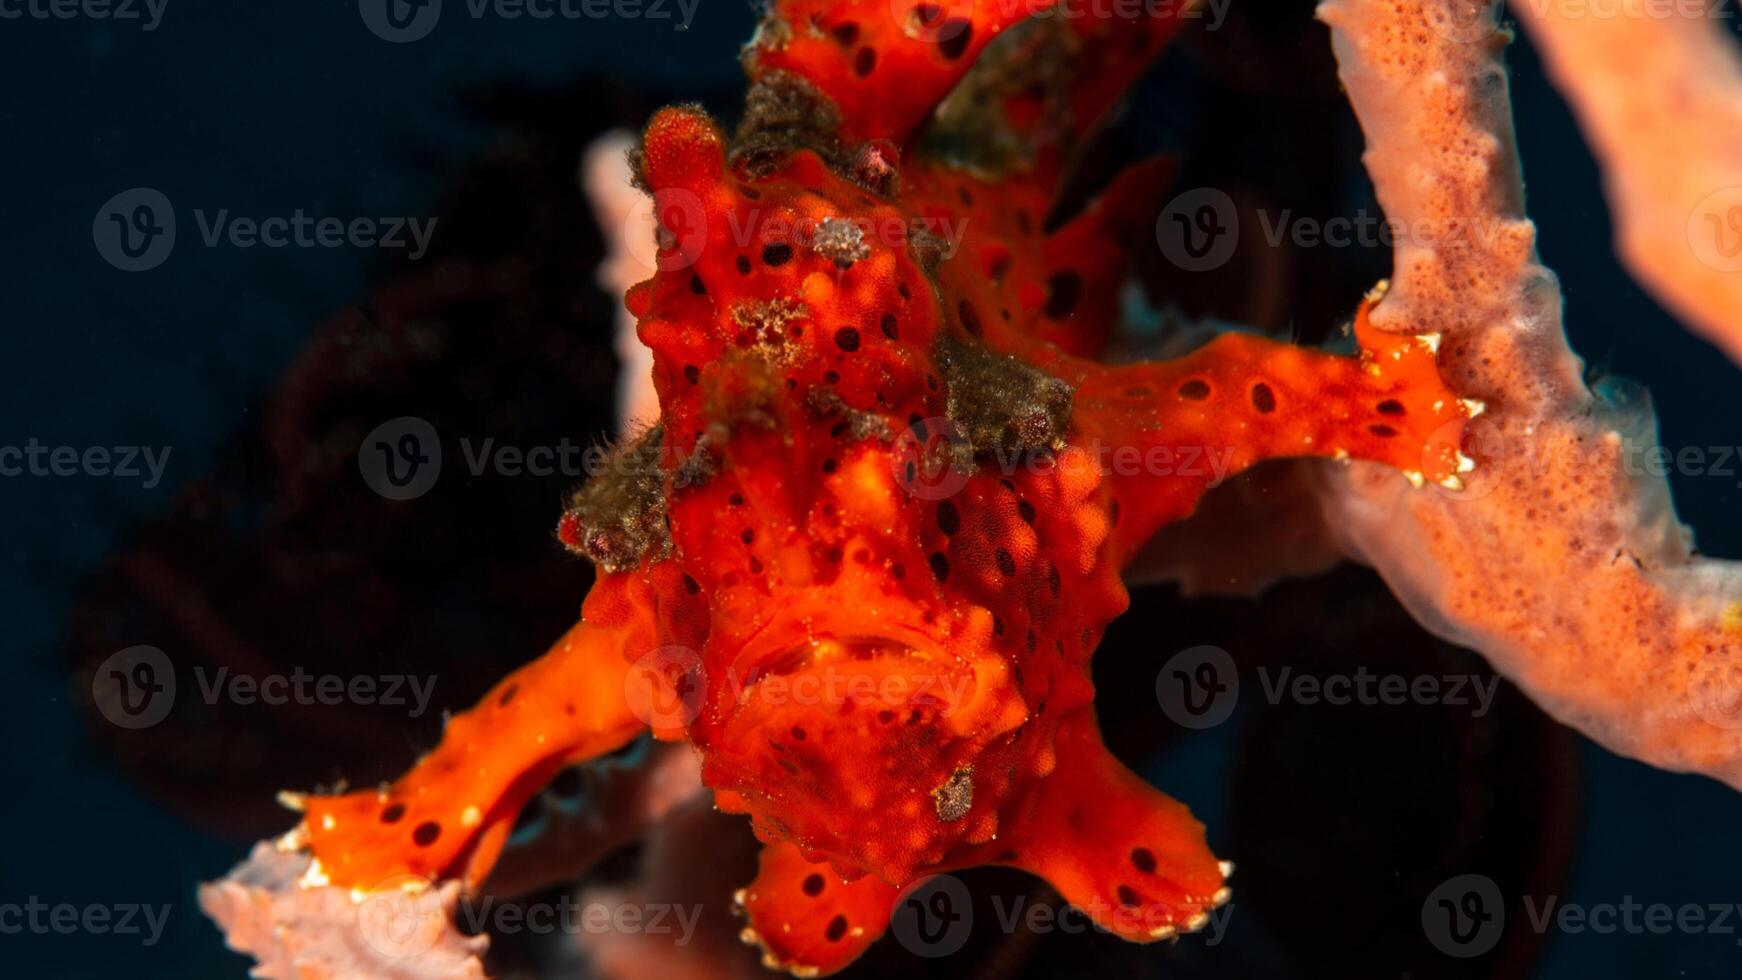 grodfisk antennarius. Fantastisk under vattnet värld, groda fisk marin varelse foto